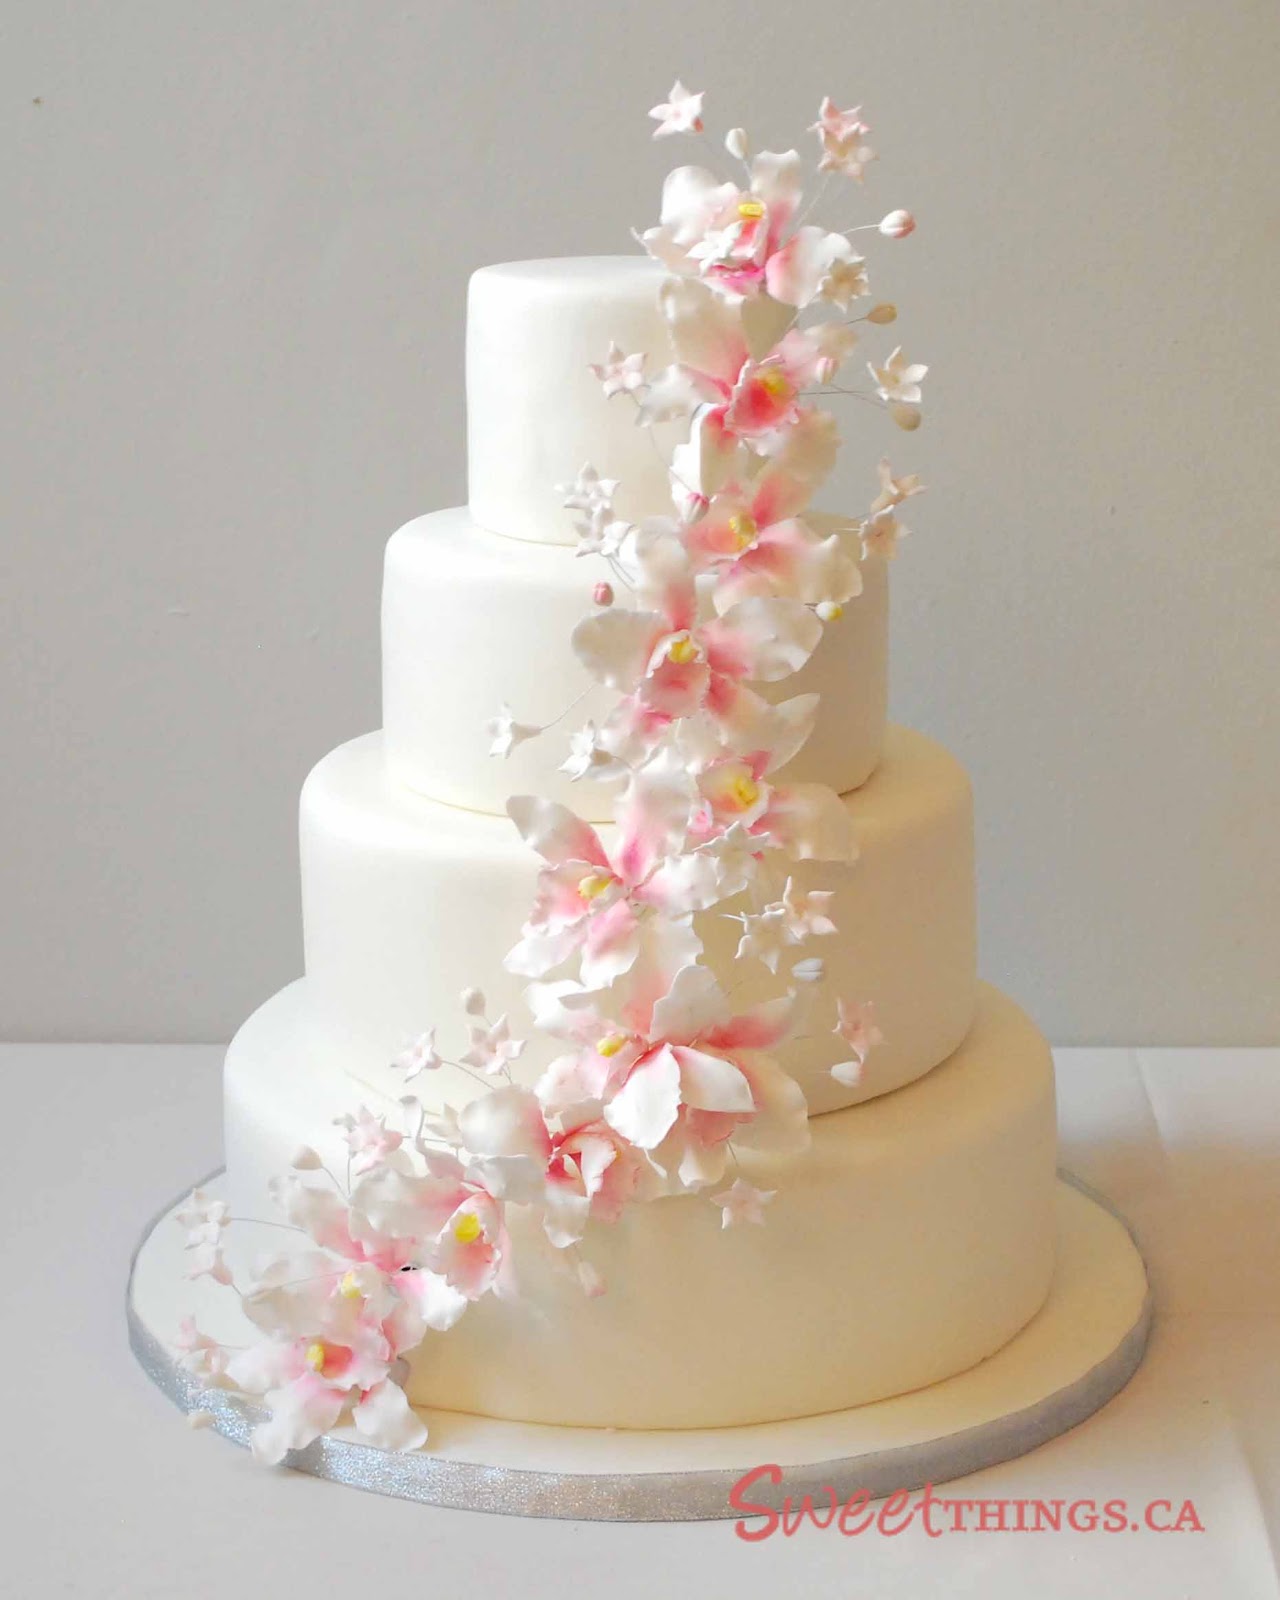  Wedding Cakes, Walmart Wedding Cakes, Design Your Own Wedding Cake